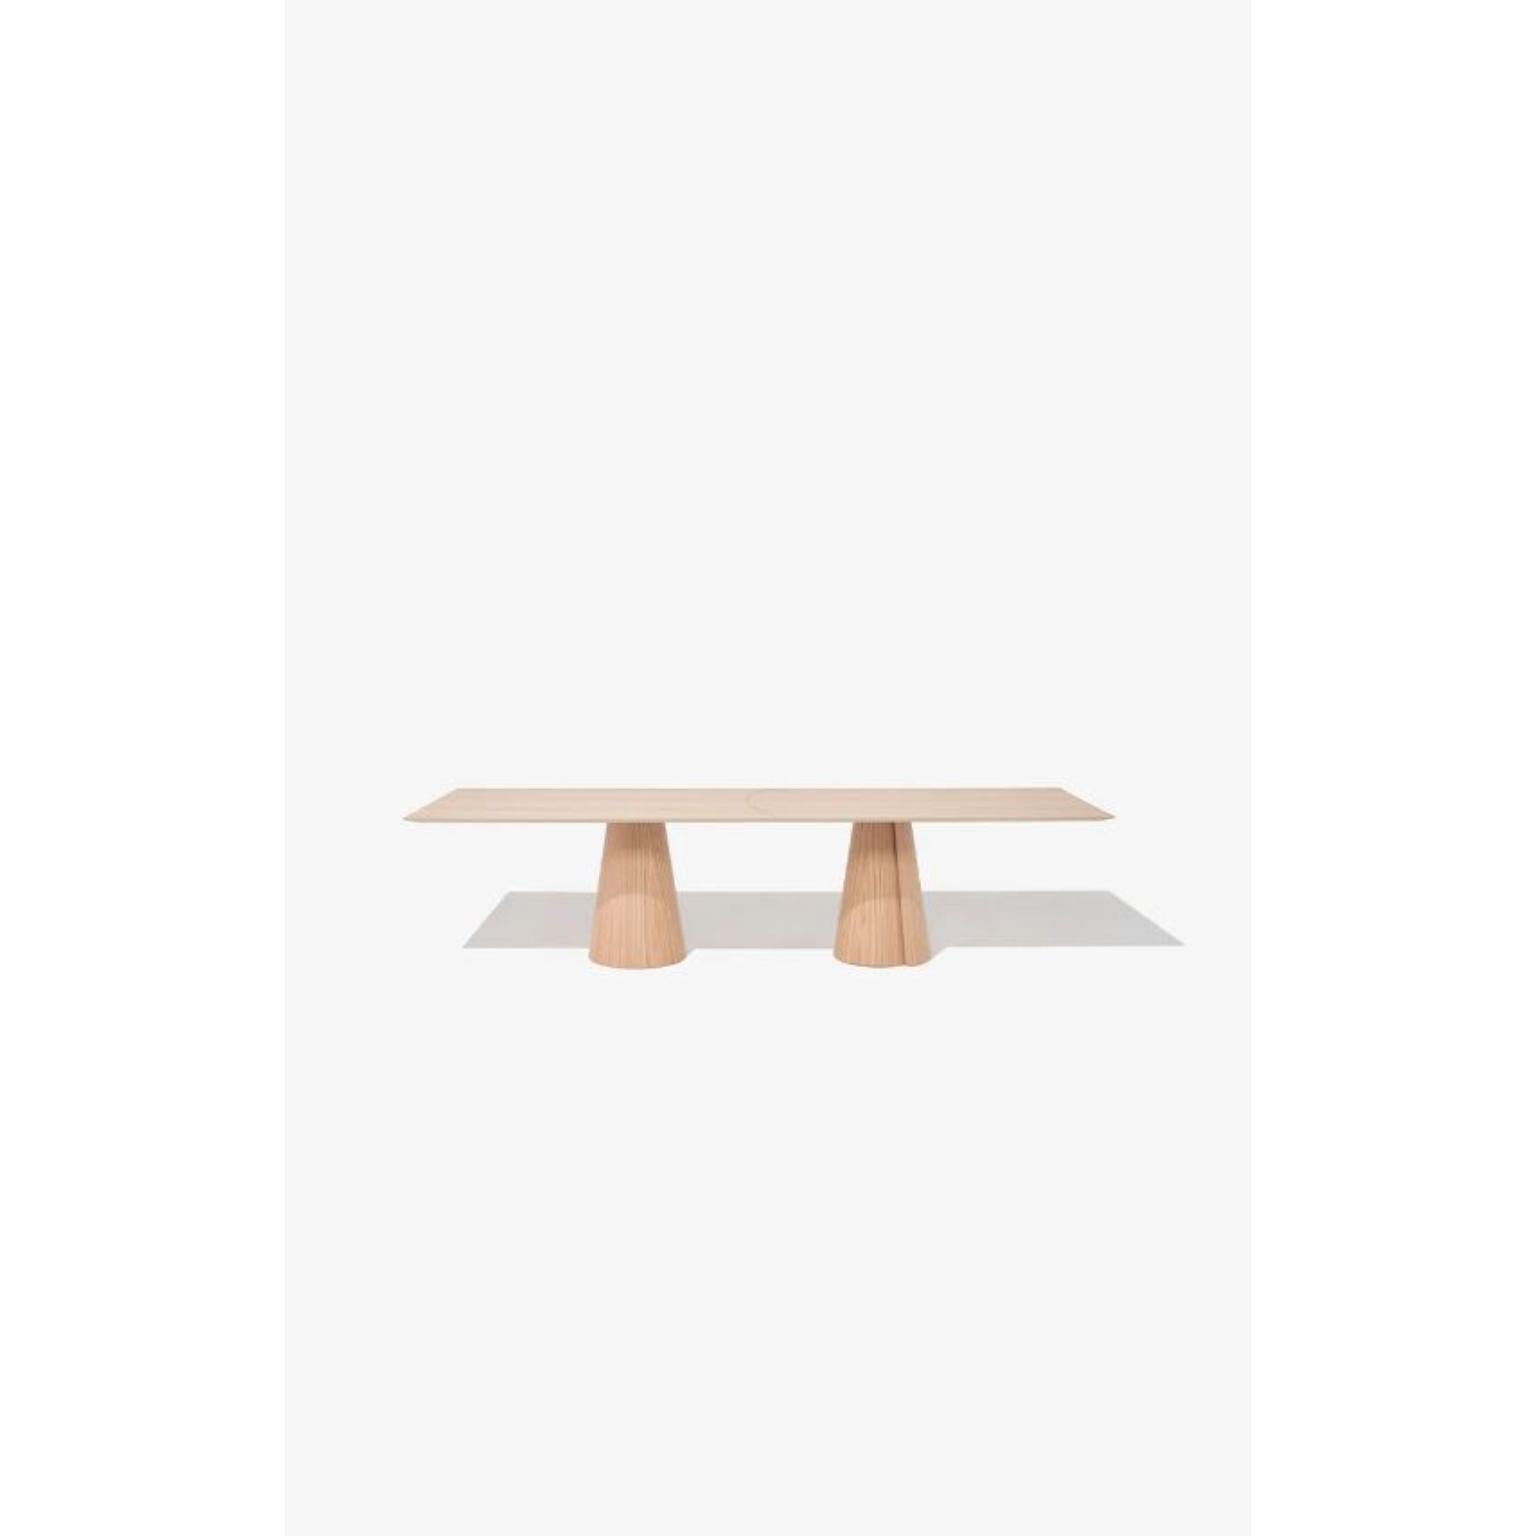 Table de salle à manger rectangulaire Volta 320 de Wentz
Dimensions : D 120 x L 320 x H 75 cm
Matériaux : Bois, contreplaqué, MDF, placage de bois naturel, acier.
Également disponible en différentes couleurs : Chêne, Noyer, Noir, Blanc, Vert